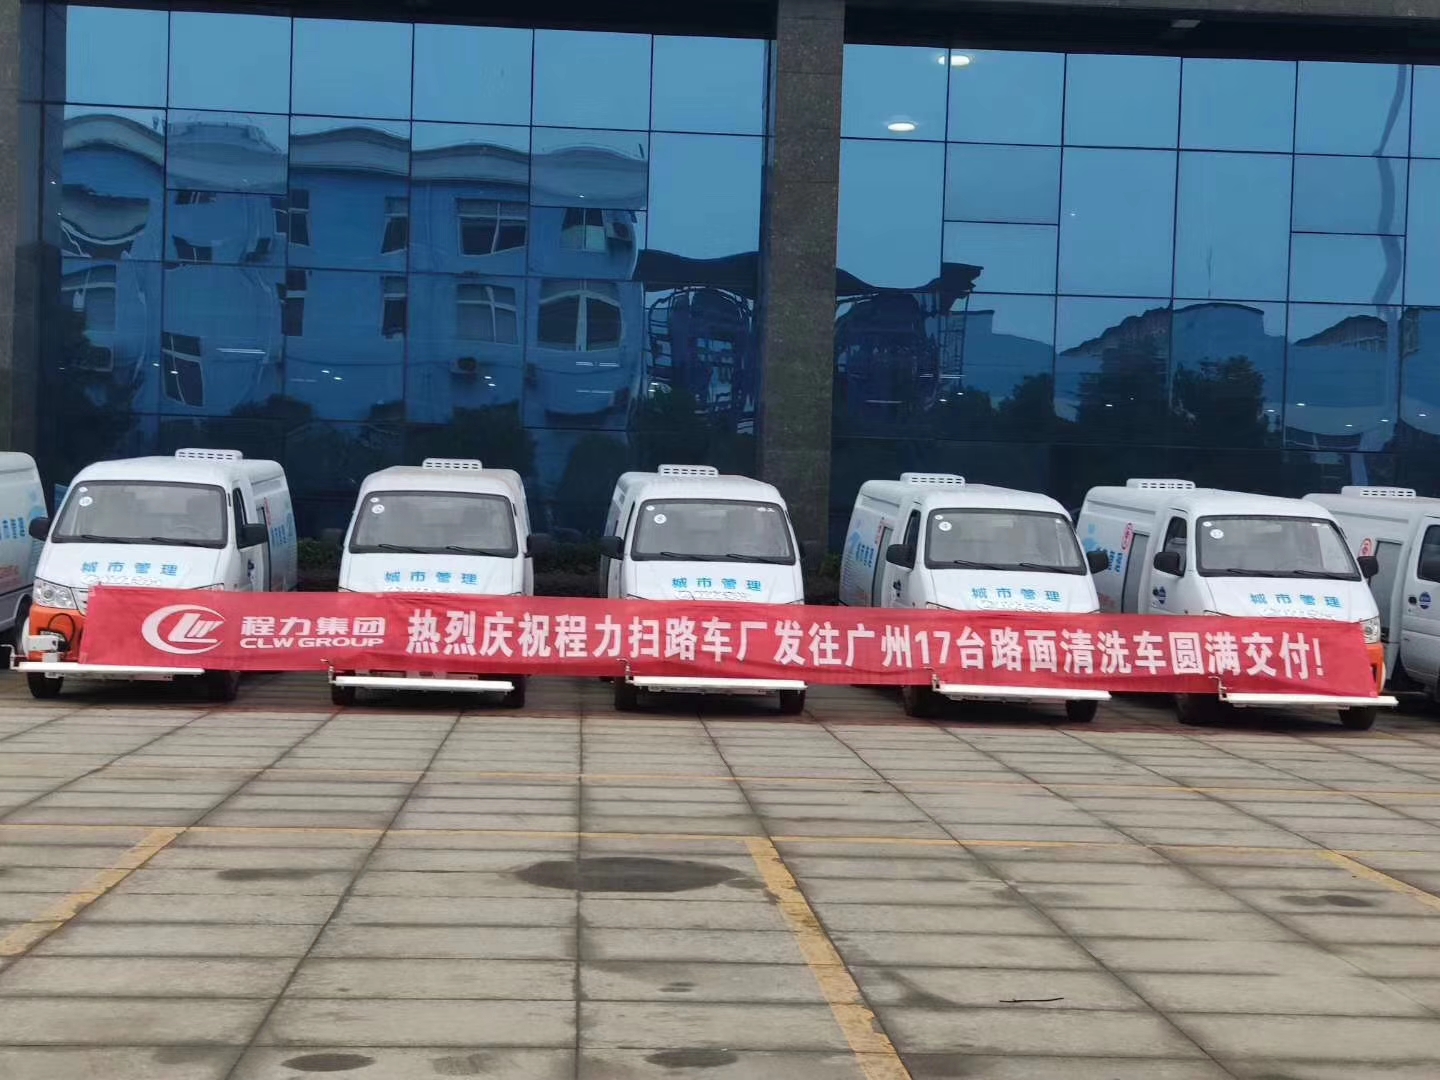 程力集团 路面清洗车17台批量供应羊城广州